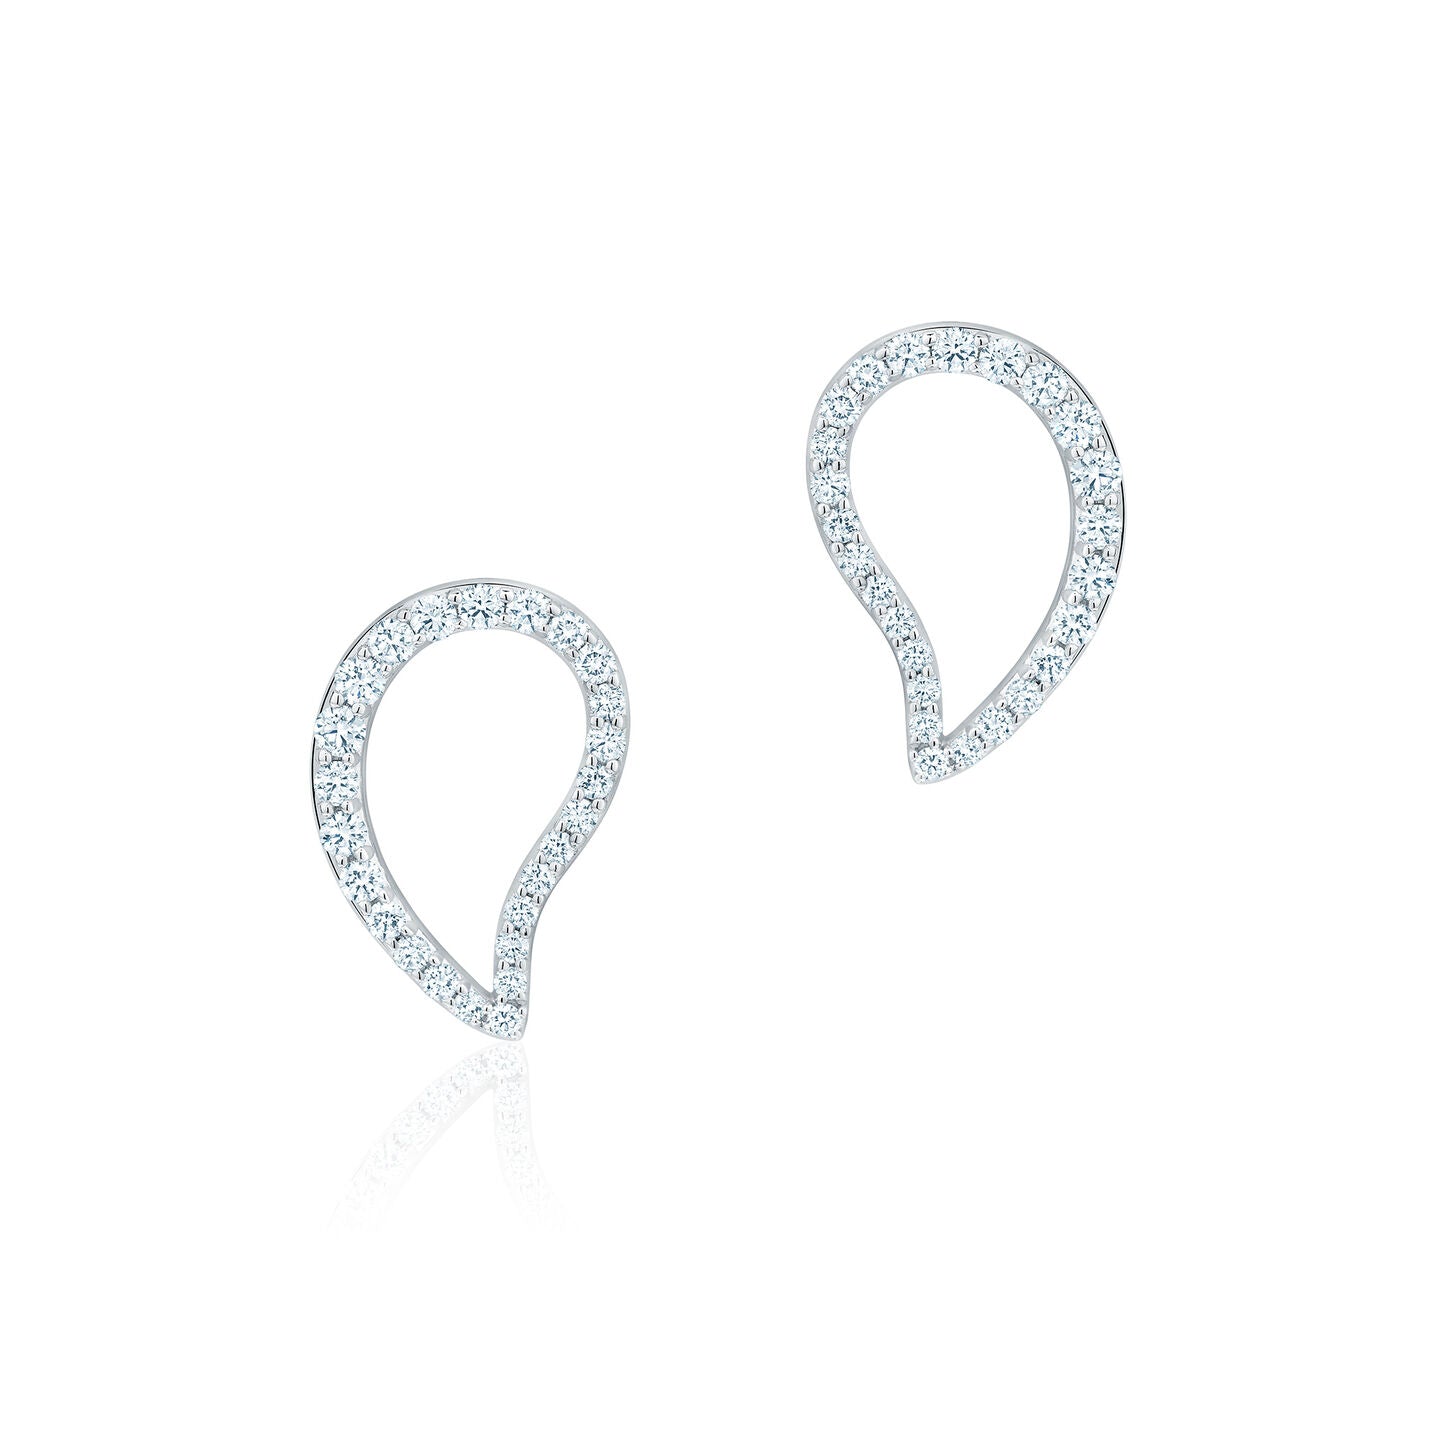 Birks Petale Large Diamond Earrings